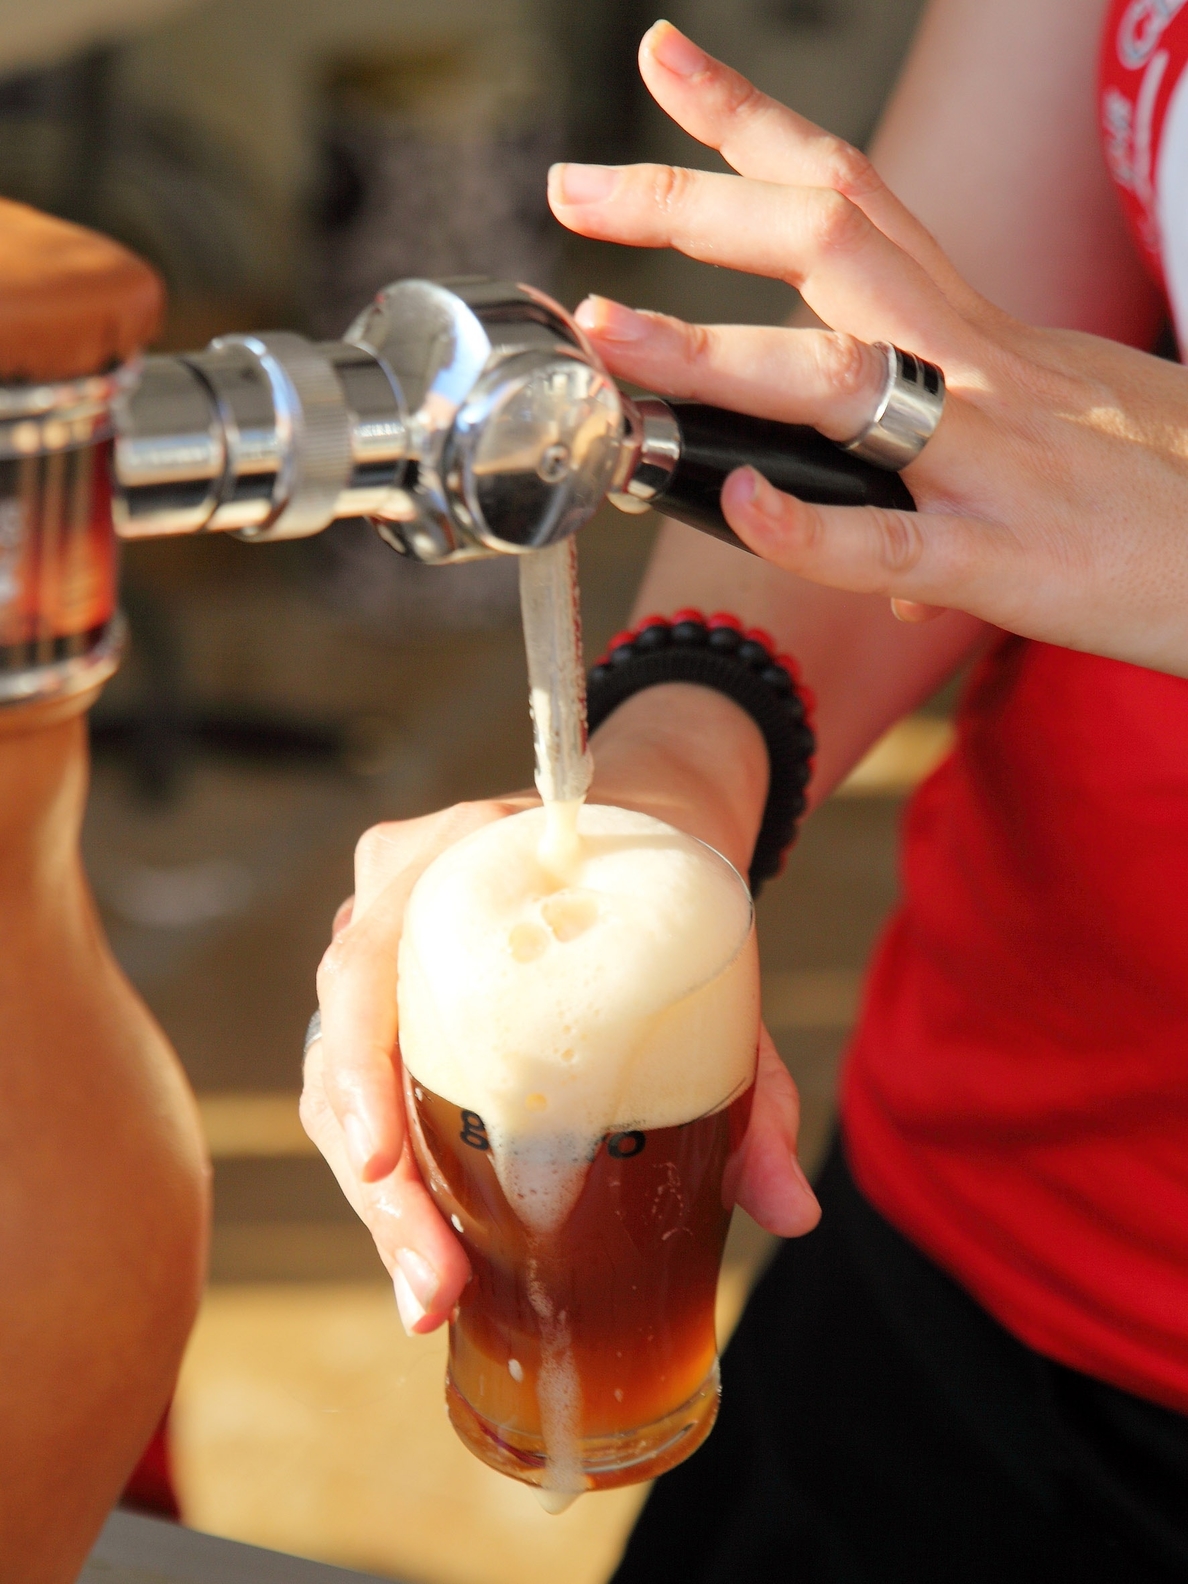 La ingesta moderada de cerveza puede proteger de lesiones miocárdicas agudas y favorecer la función cardiaca global